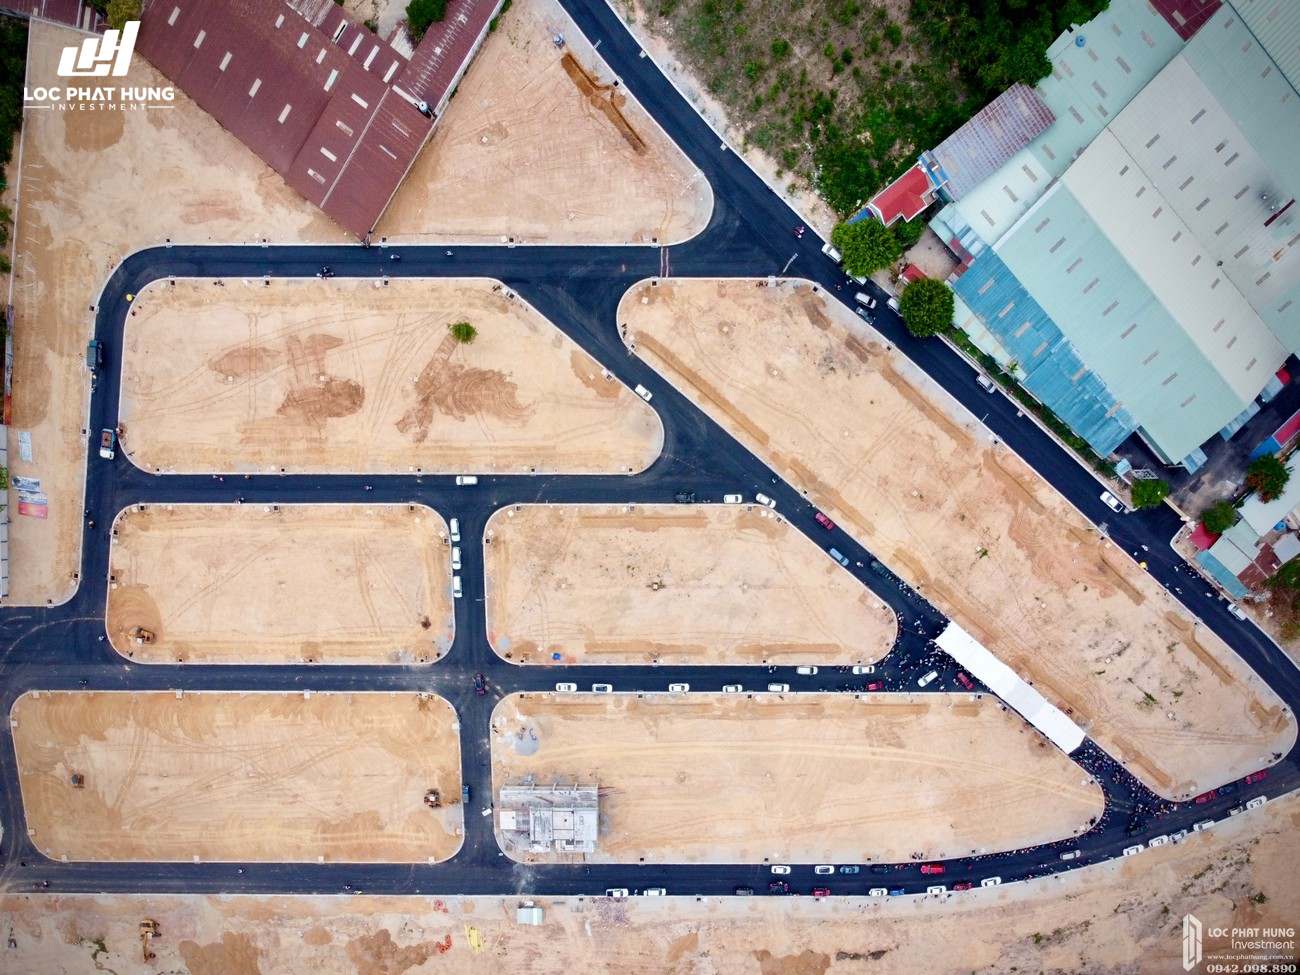 Tiến độ dự án đất nền nhà phố Bình Dương Avenue City 09/05/2020 Bến Cát Đường Quốc lộ 13 chủ đầu tư Phú Cường